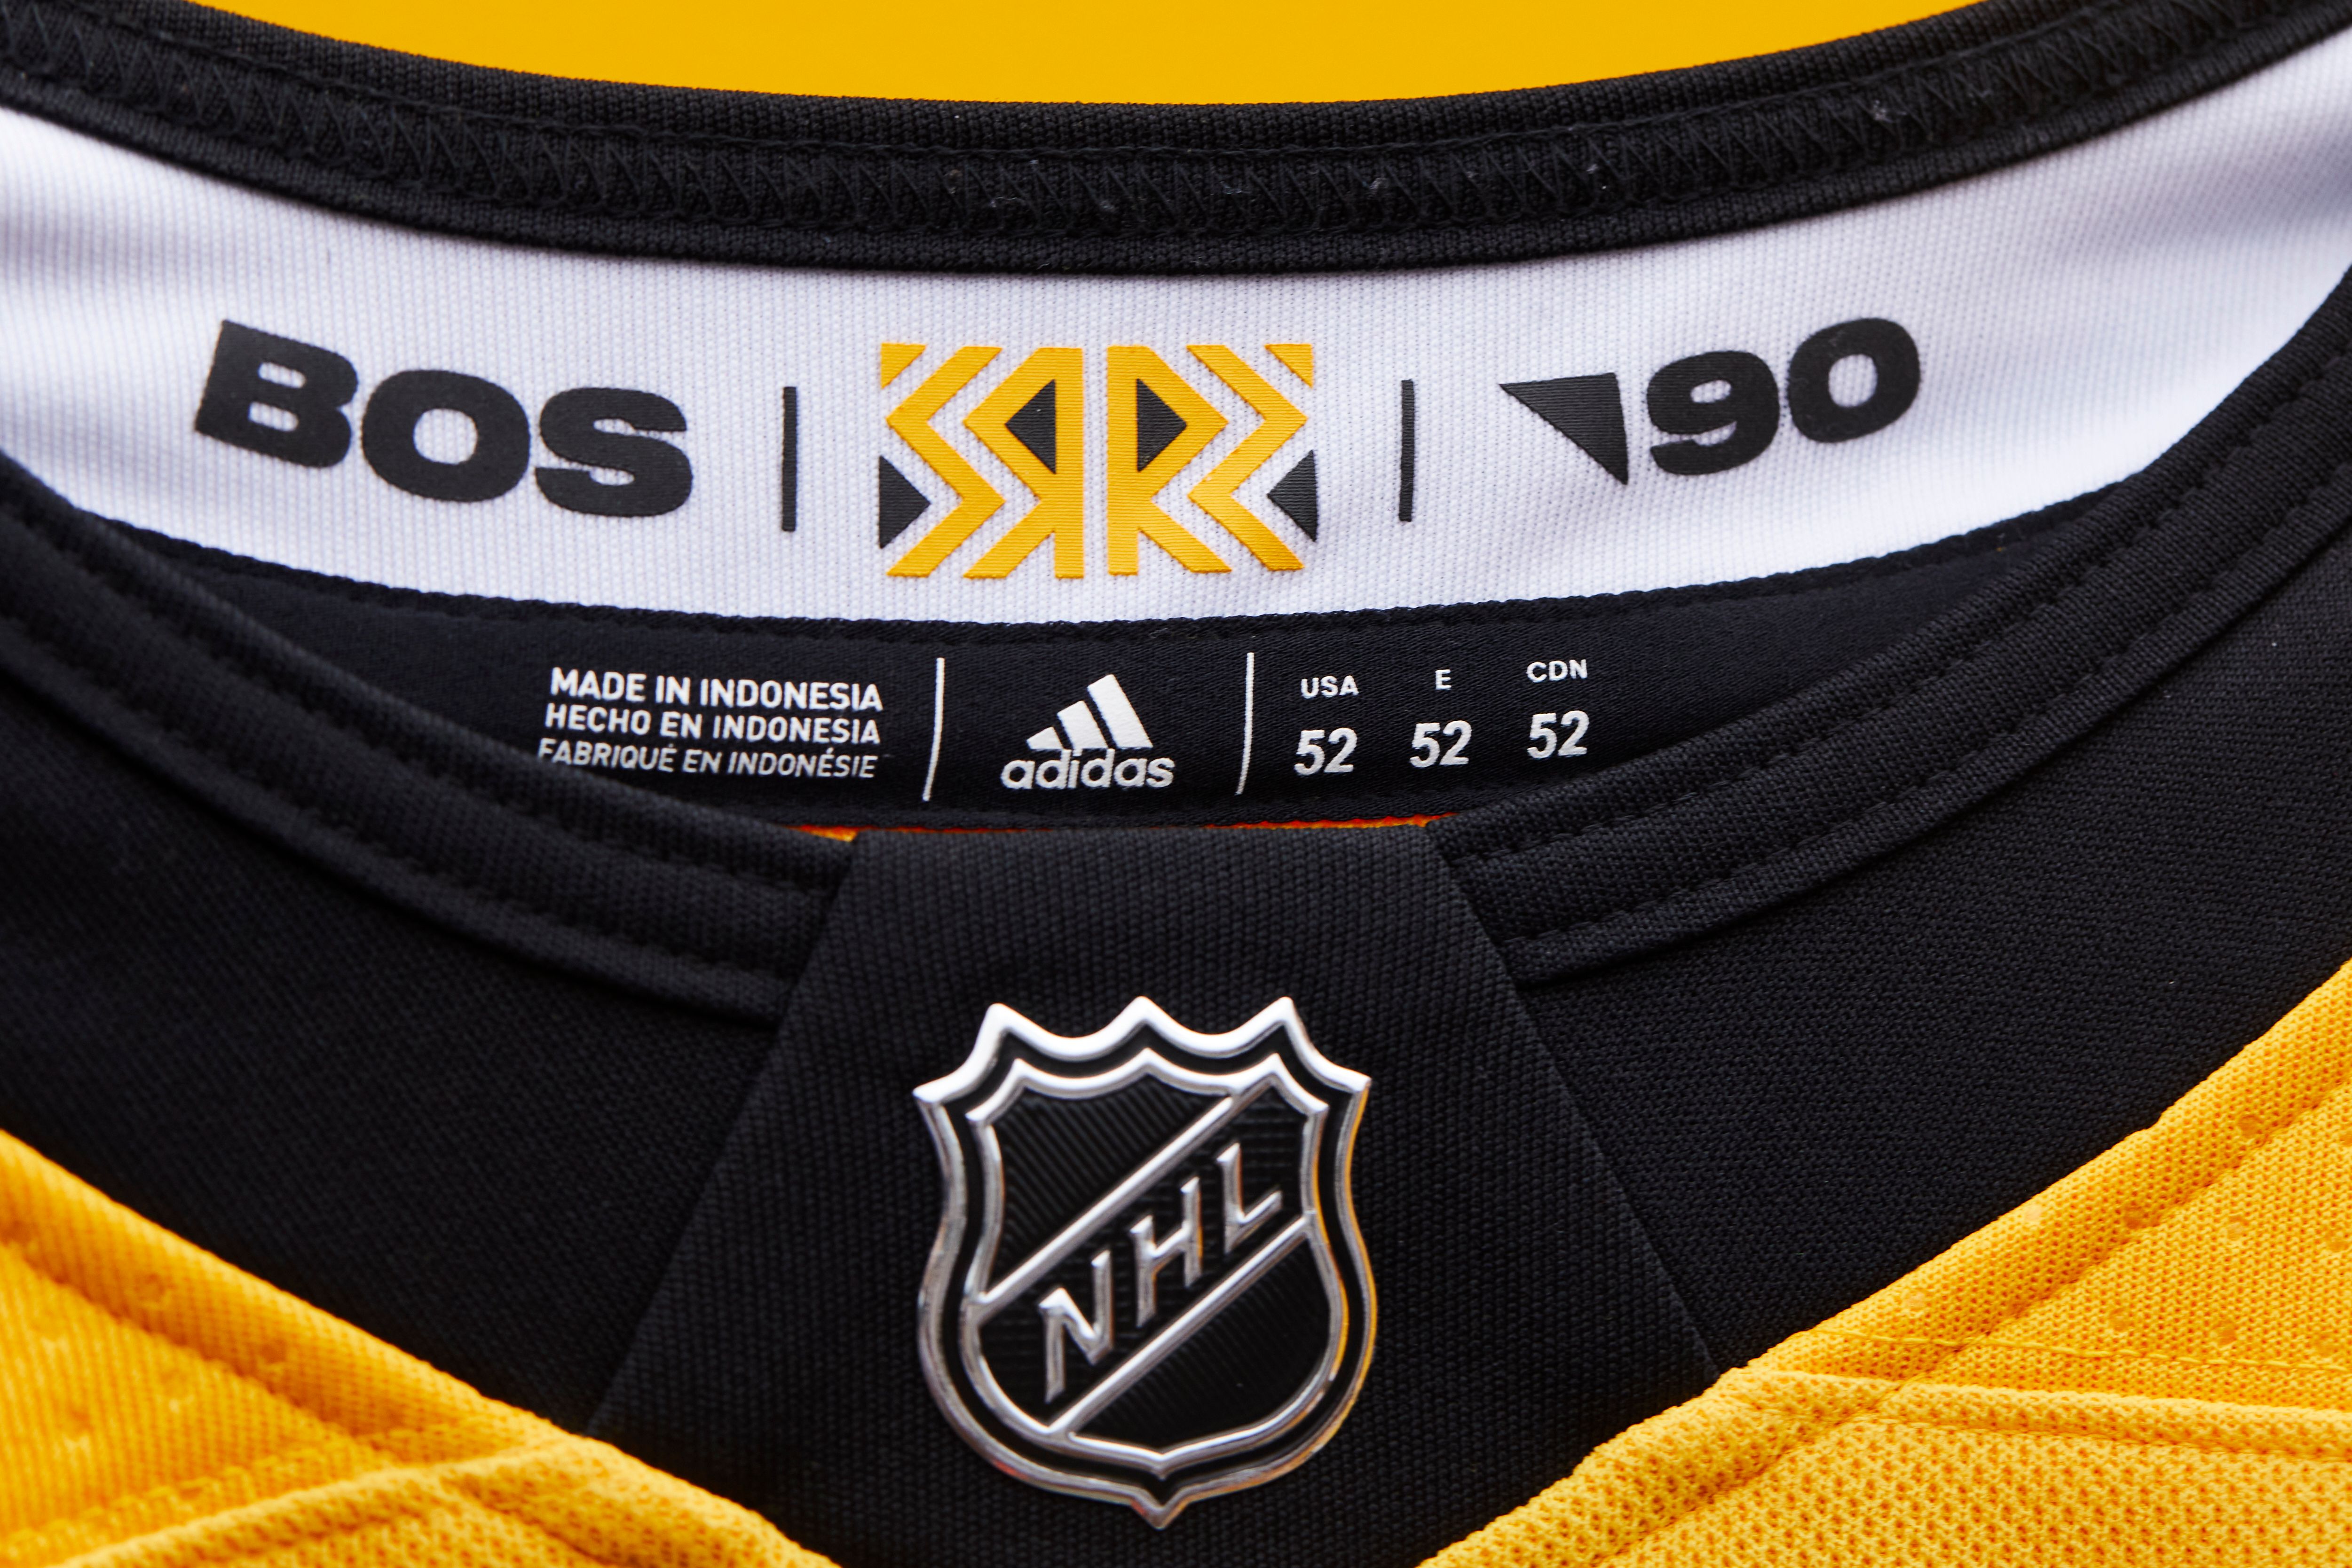 Photos: Boston Bruins unveil new retro jersey - Boston News